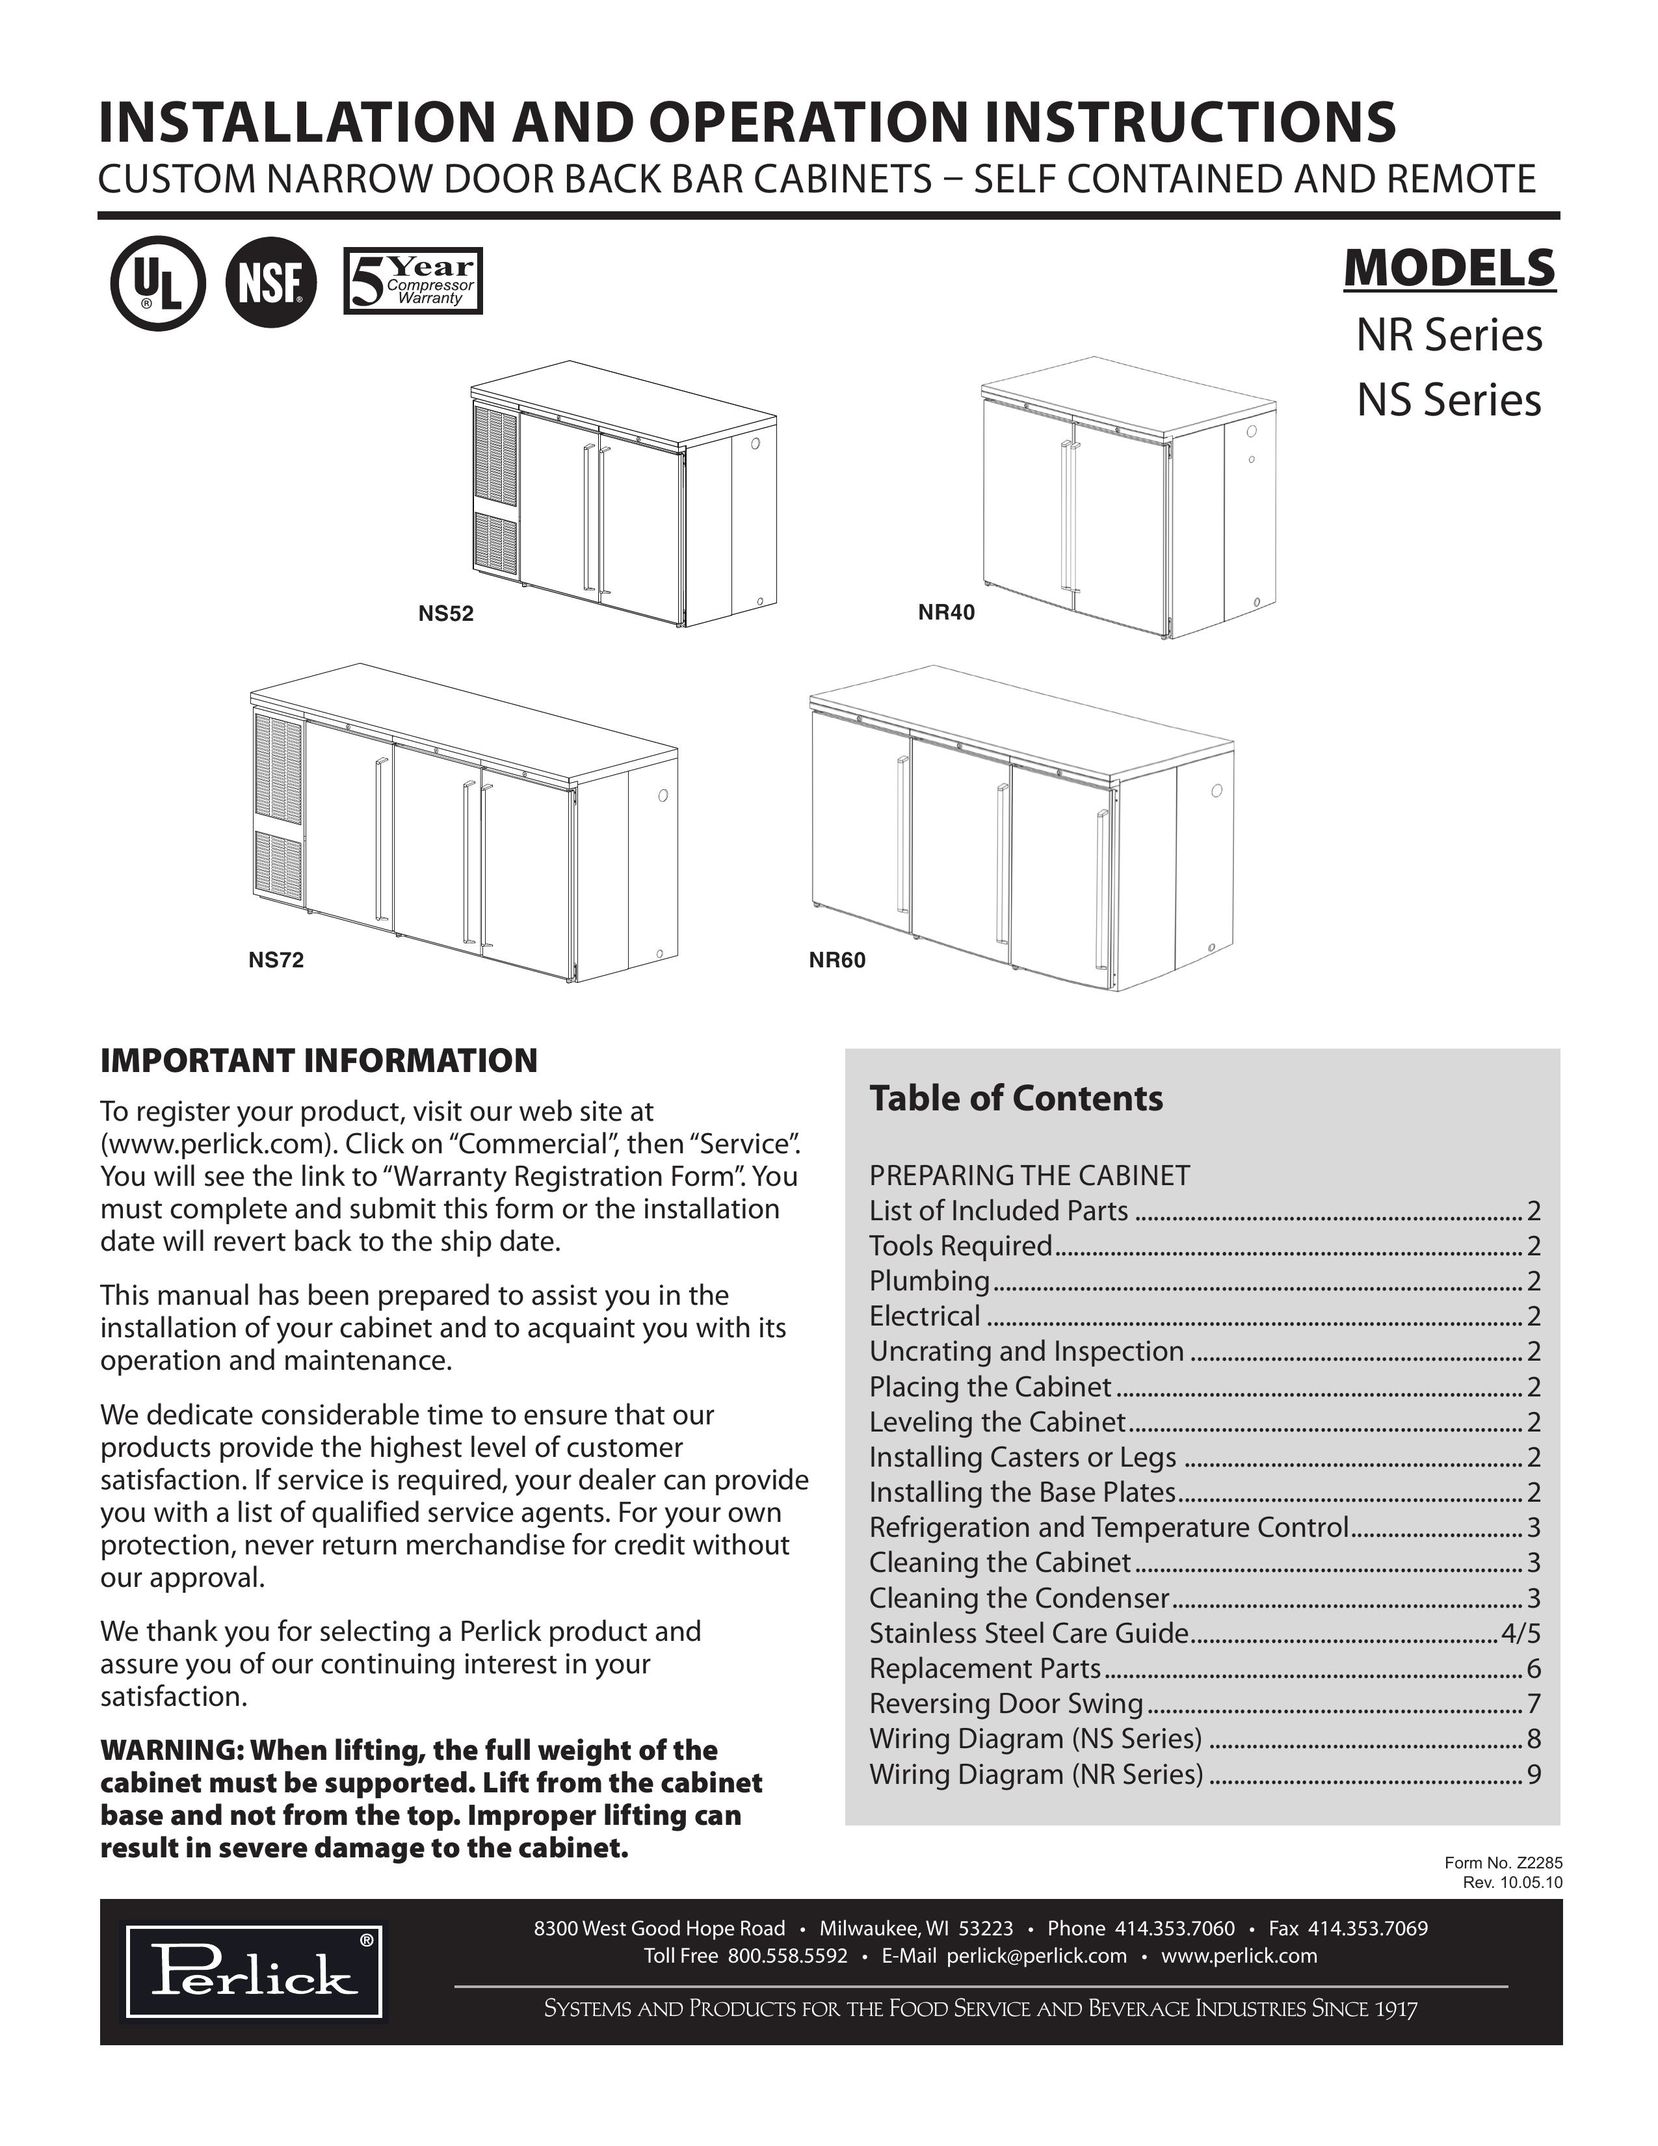 Perlick NR Series Doll User Manual